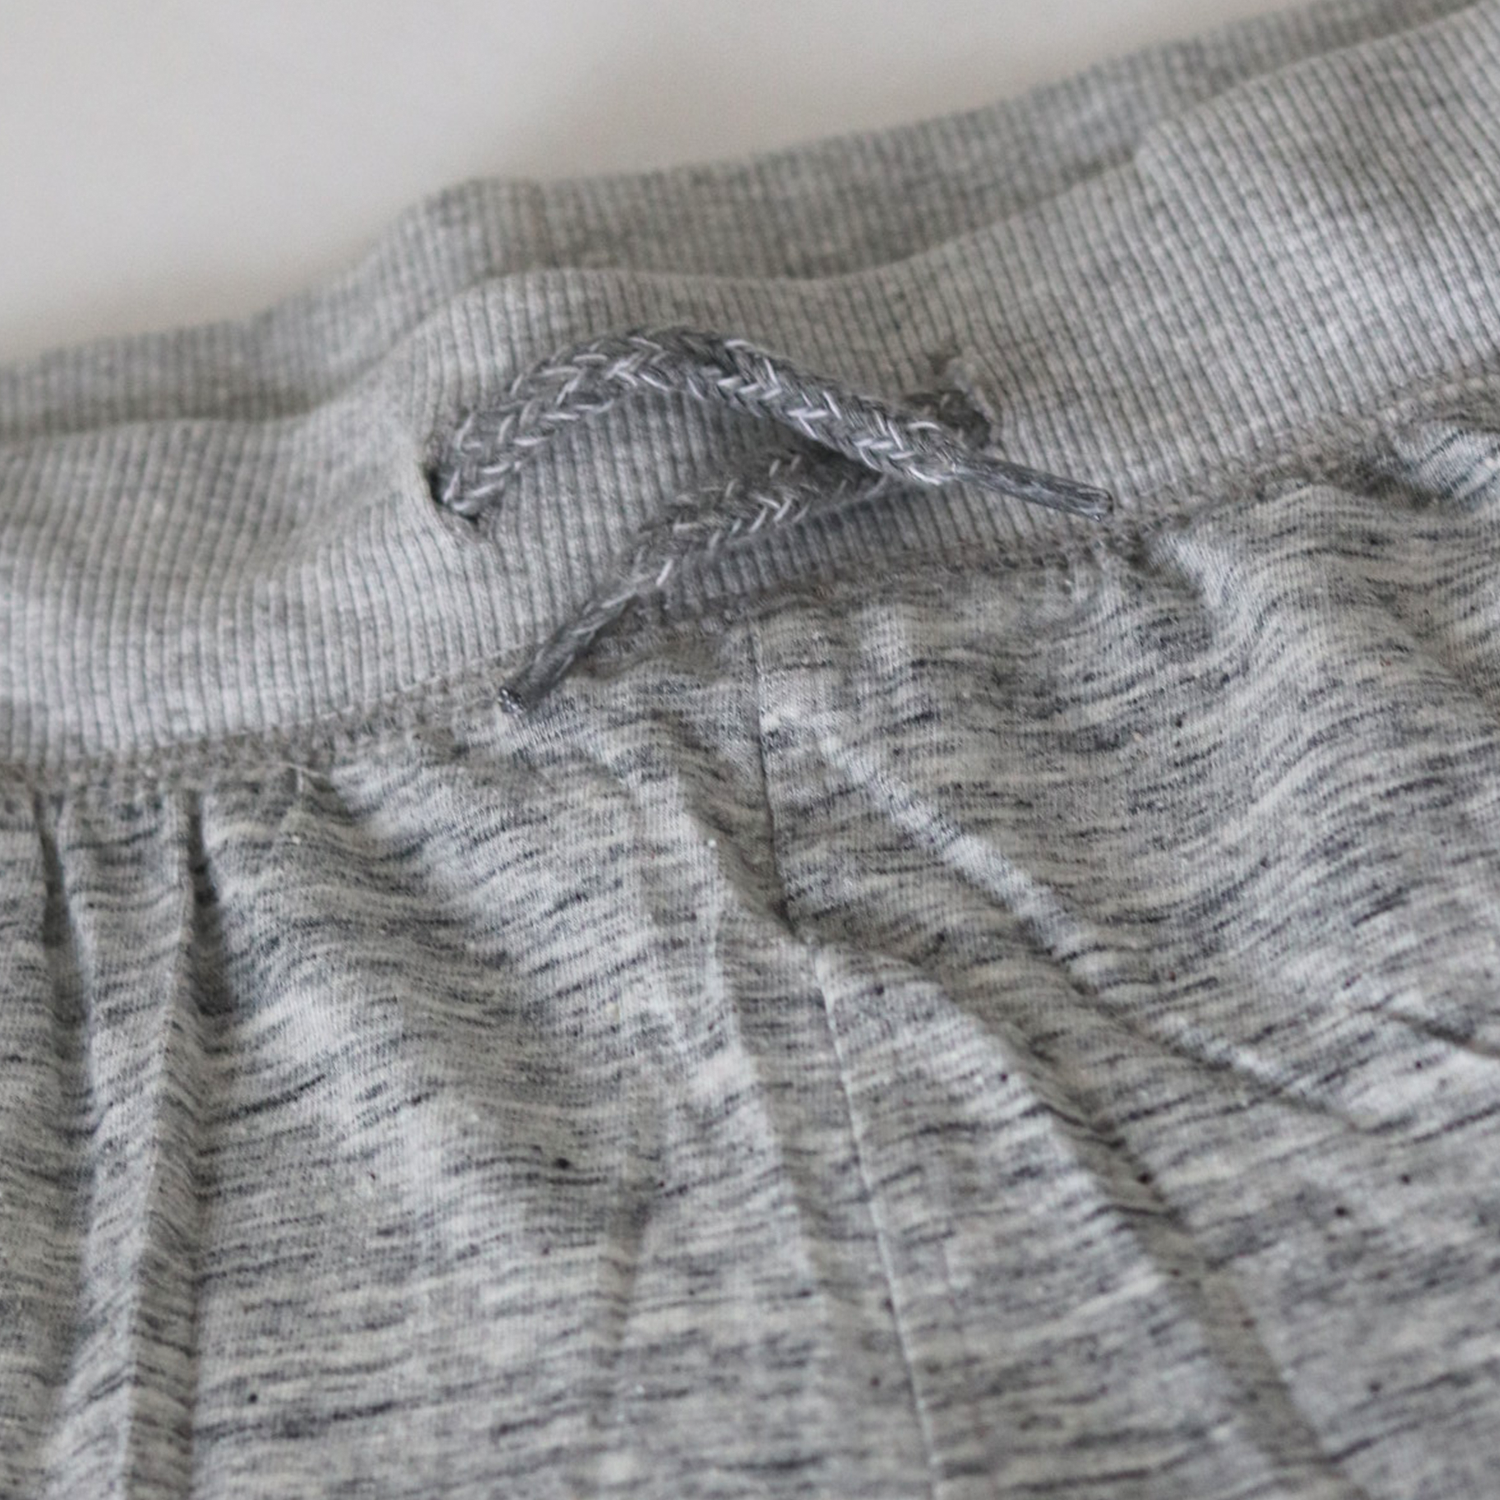 Pure Cotton Bermuda Shorts